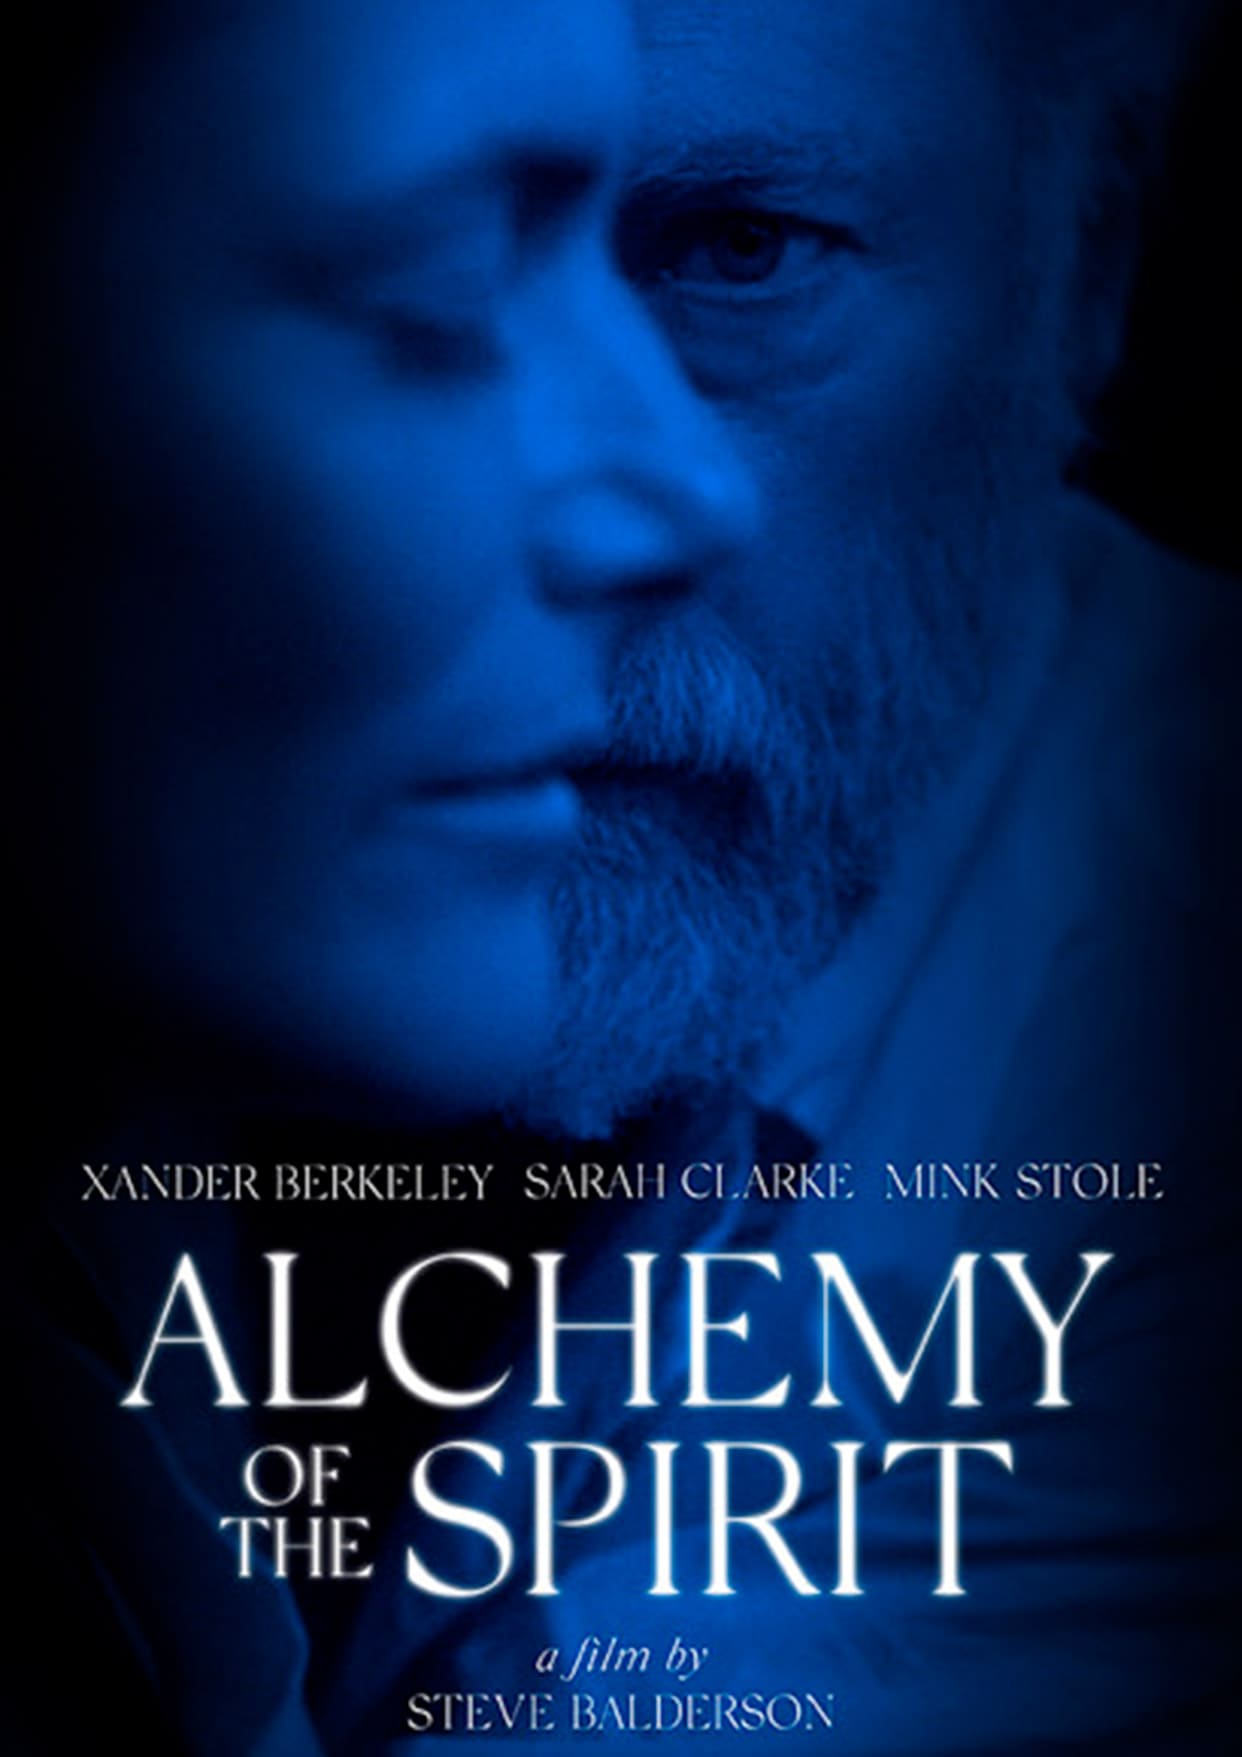 ALCHEMY OF THE SPIRIT